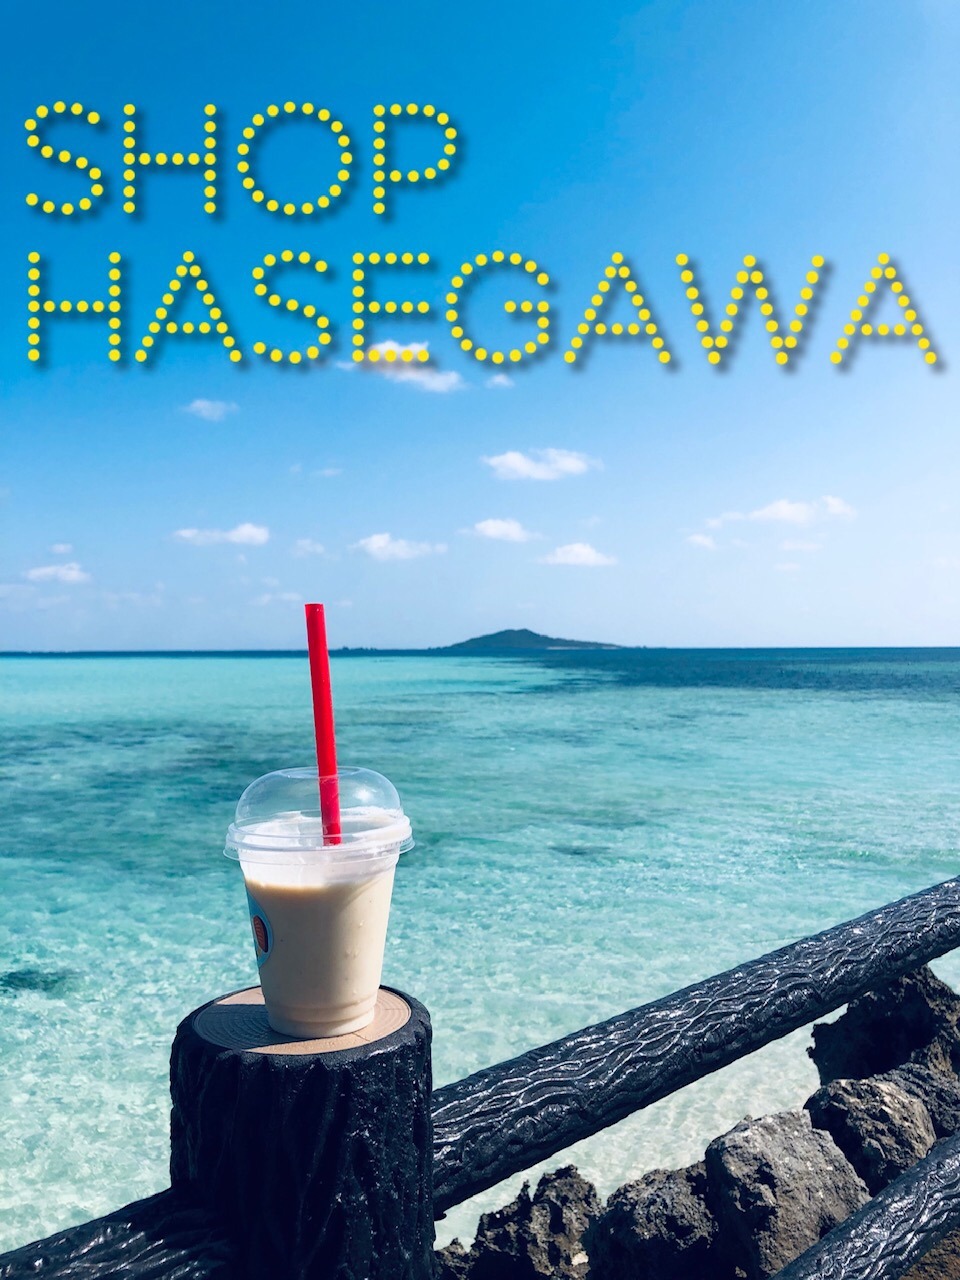 SHOP HASEGAWA